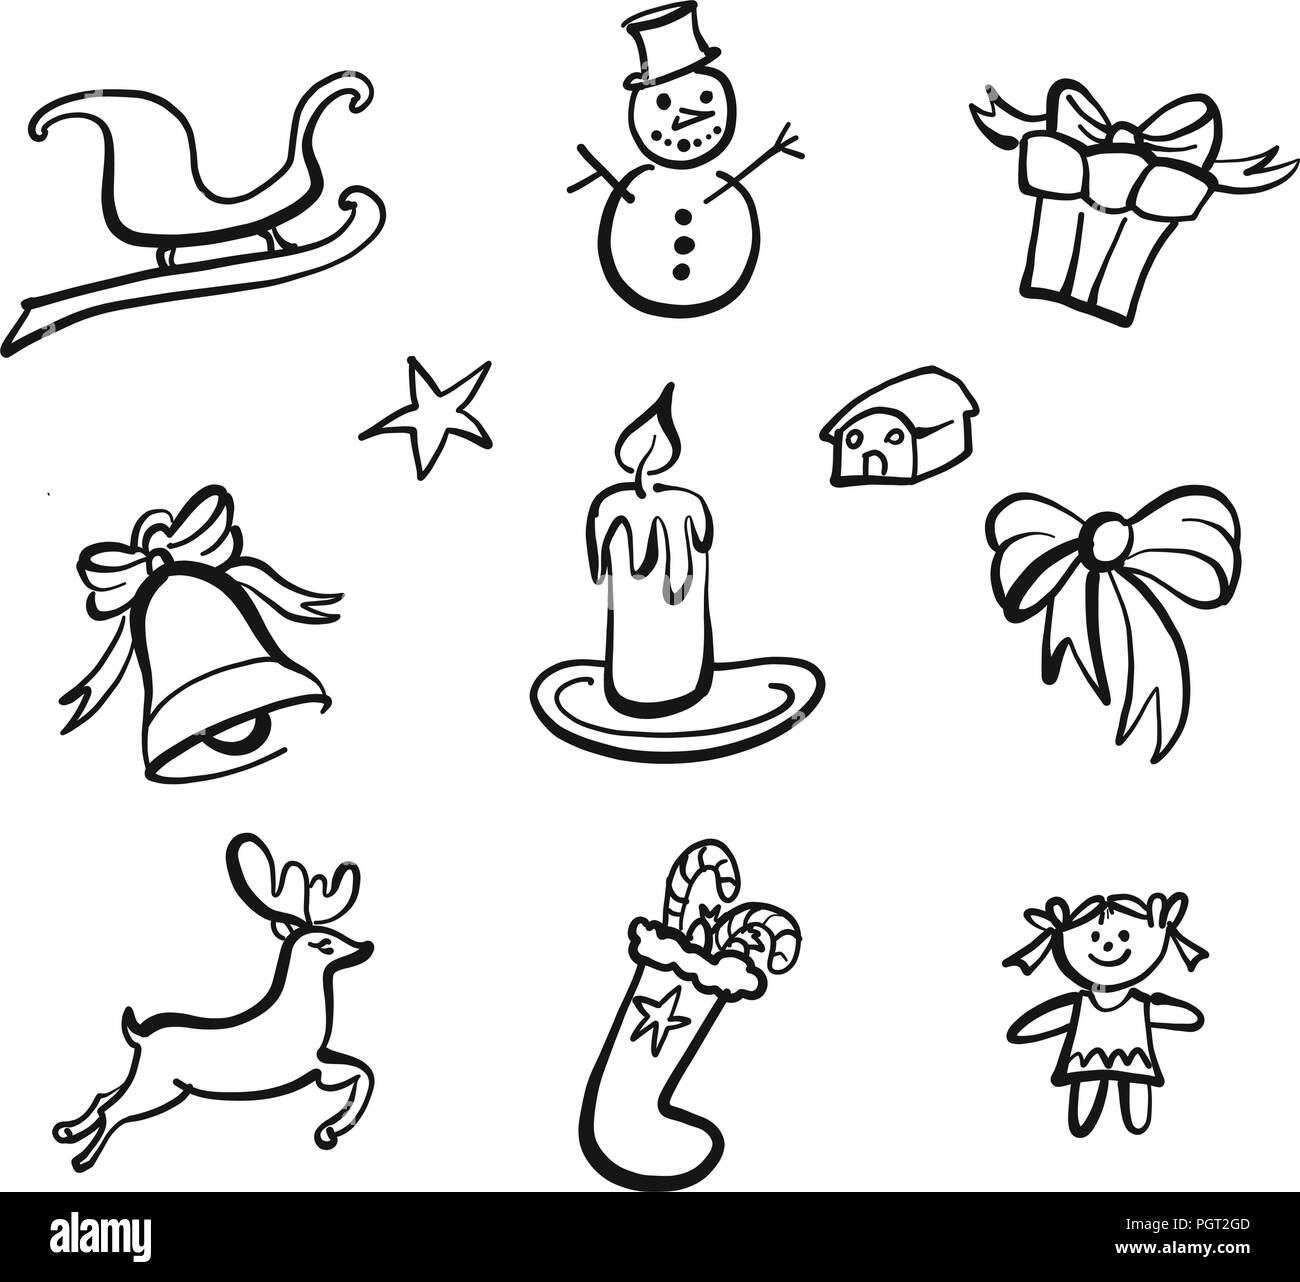 Disegni natalizi immagini e fotografie stock ad alta risoluzione - Alamy